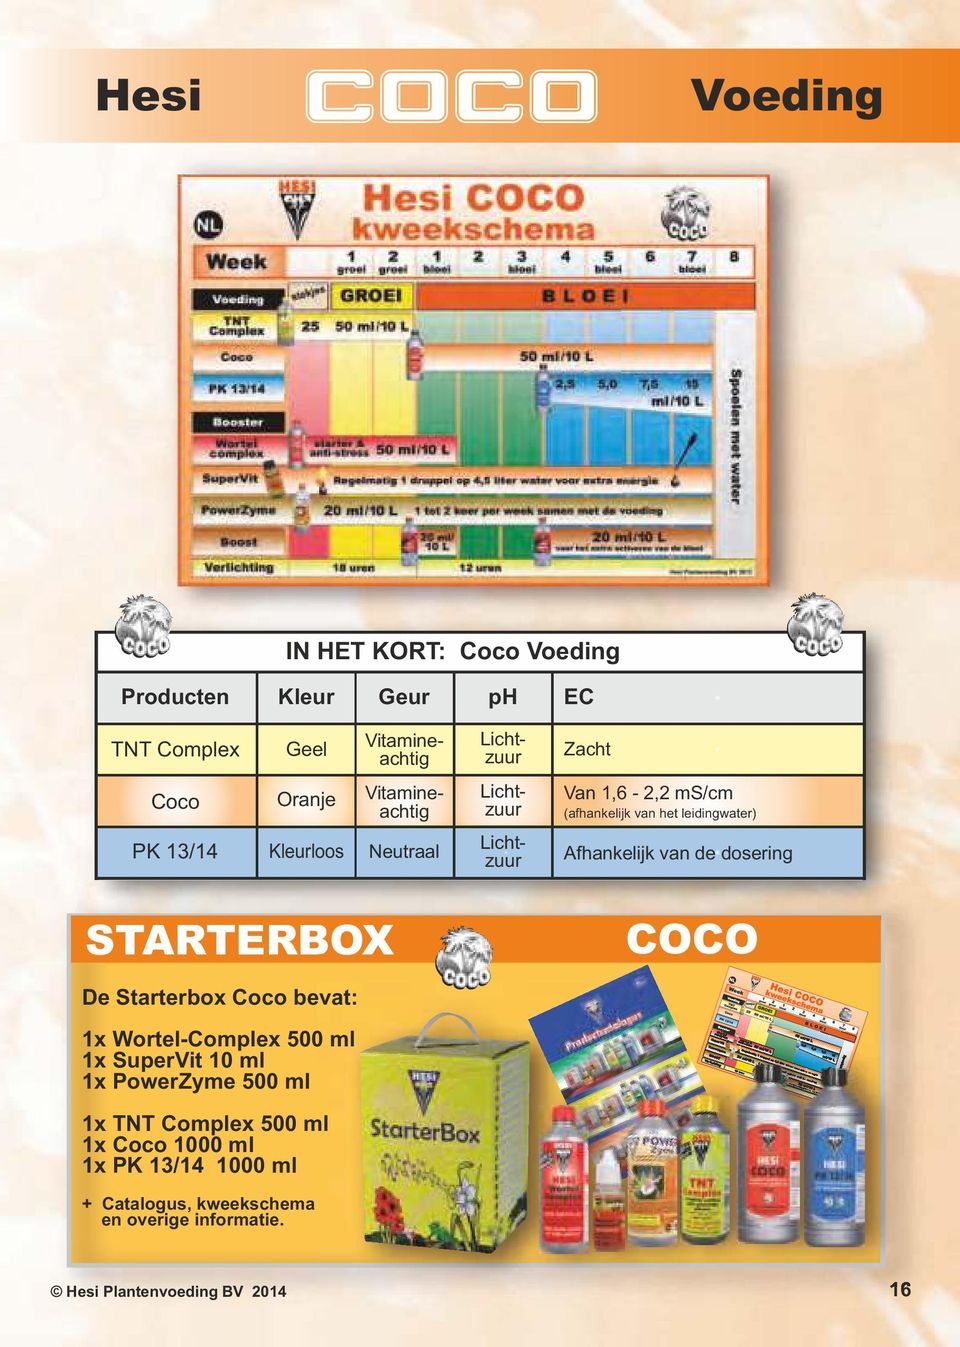 Afhankelijk van de dosering STARTERBOX COCO De Starterbo Coco bevat: 1 Wortel-Comple 500 ml 1 SuperVit 10 ml 1 PowerZyme 500